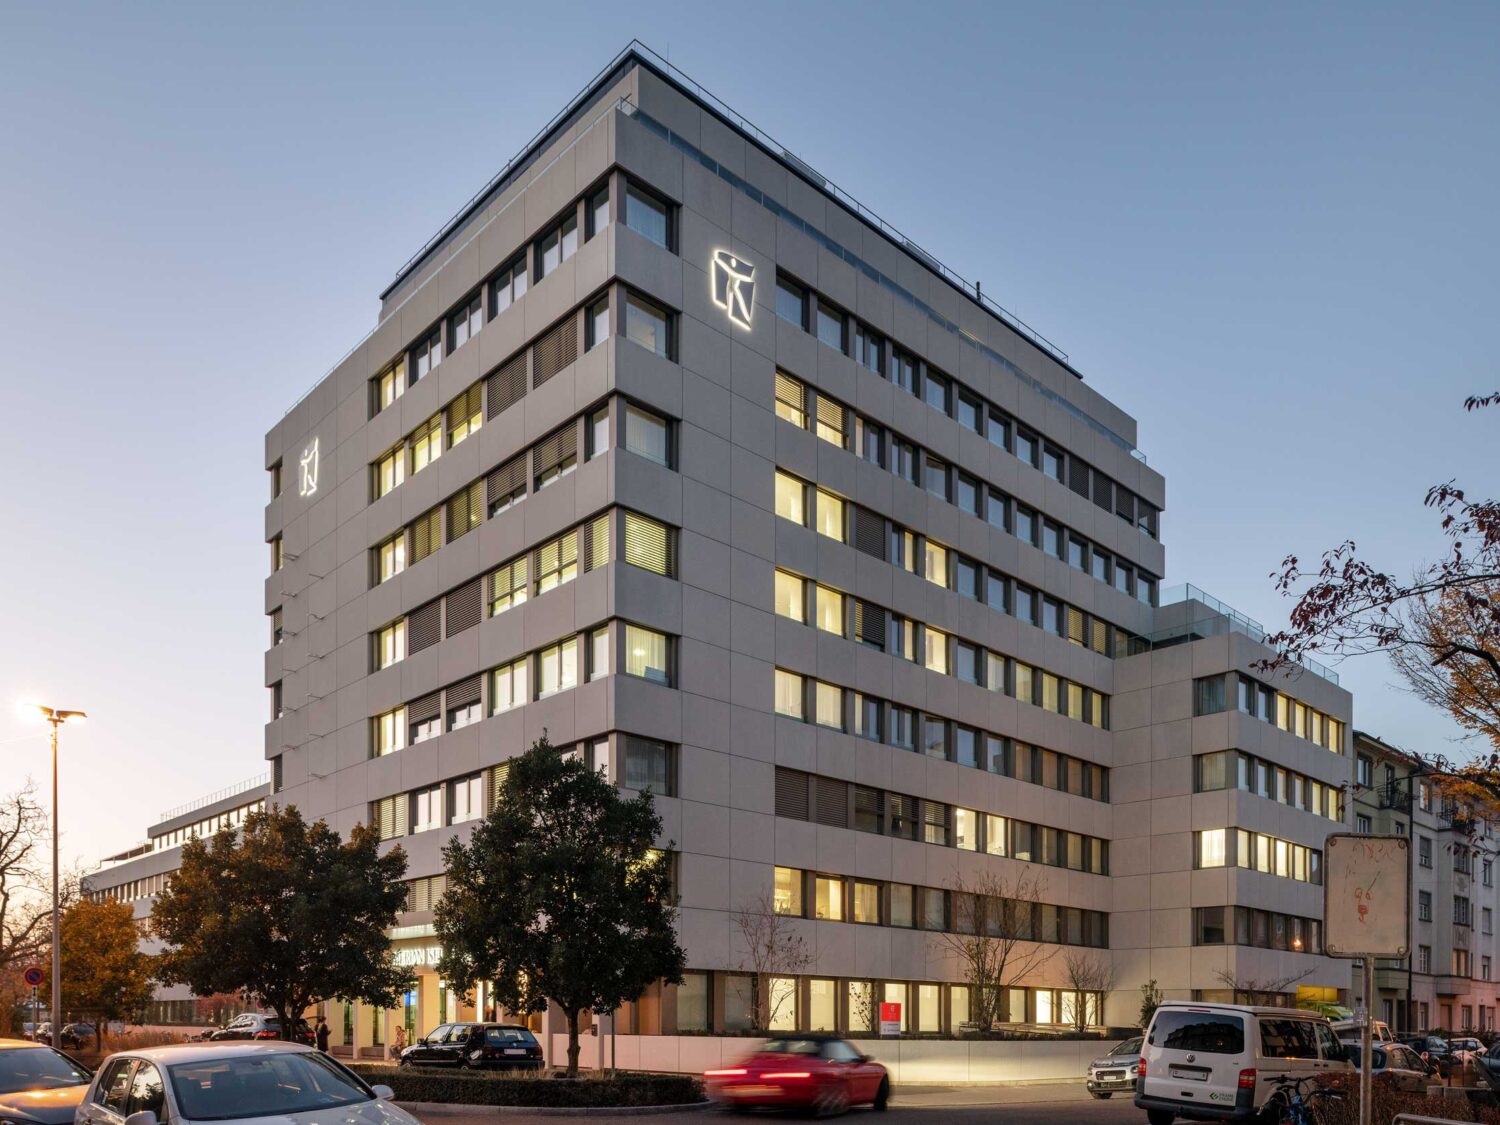 Merian Iselin Klinik Basel